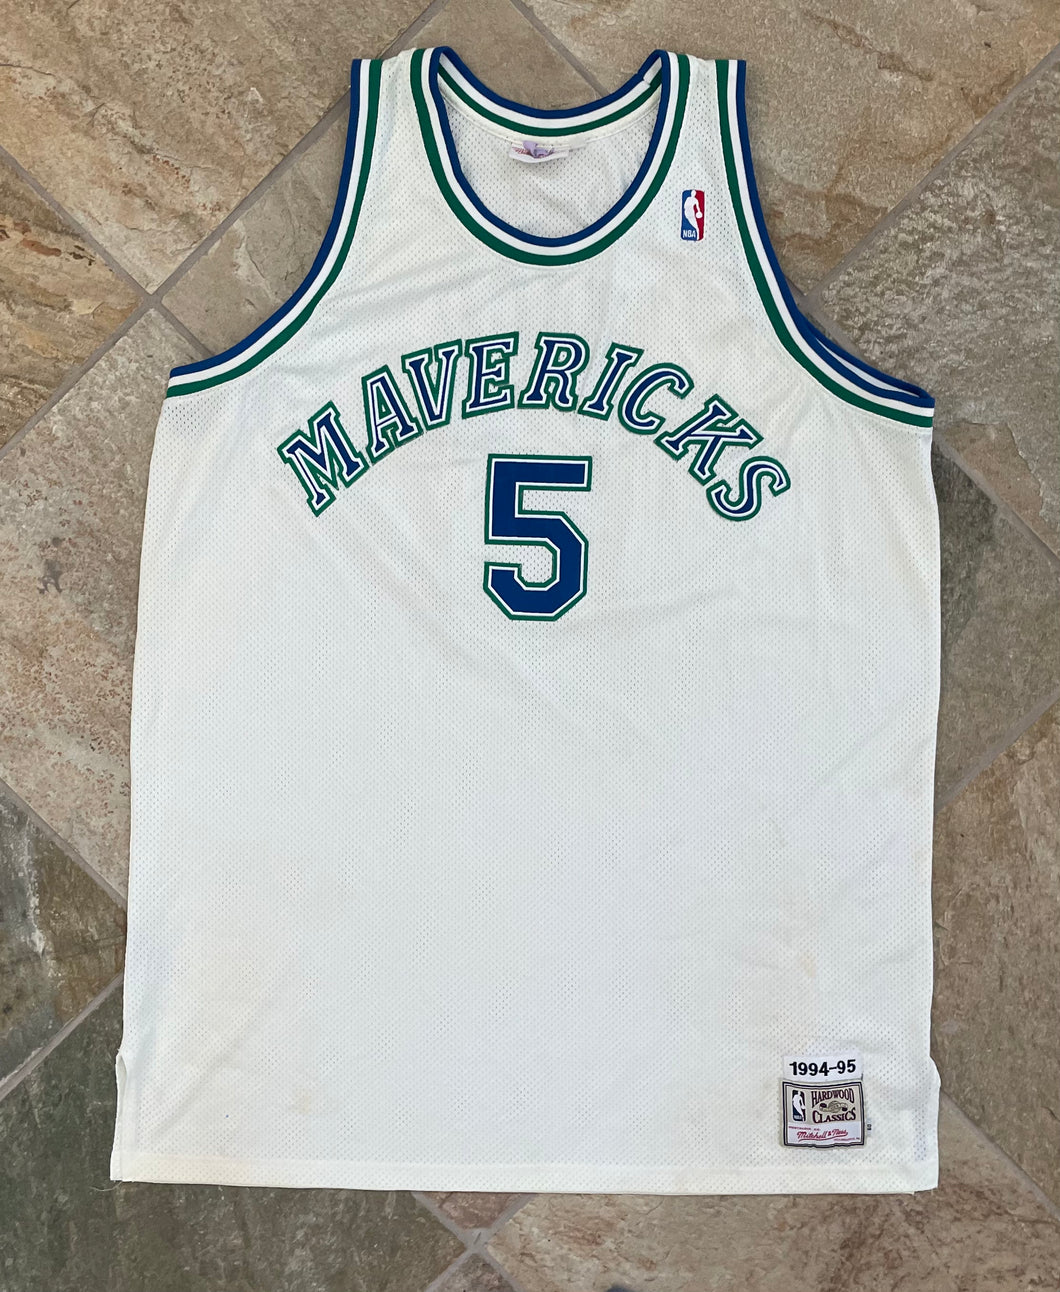 Dallas Mavericks Jason Kidd Mitchell and Ness Hardwood Classics Basketball Jersey, Size 60, XXXL